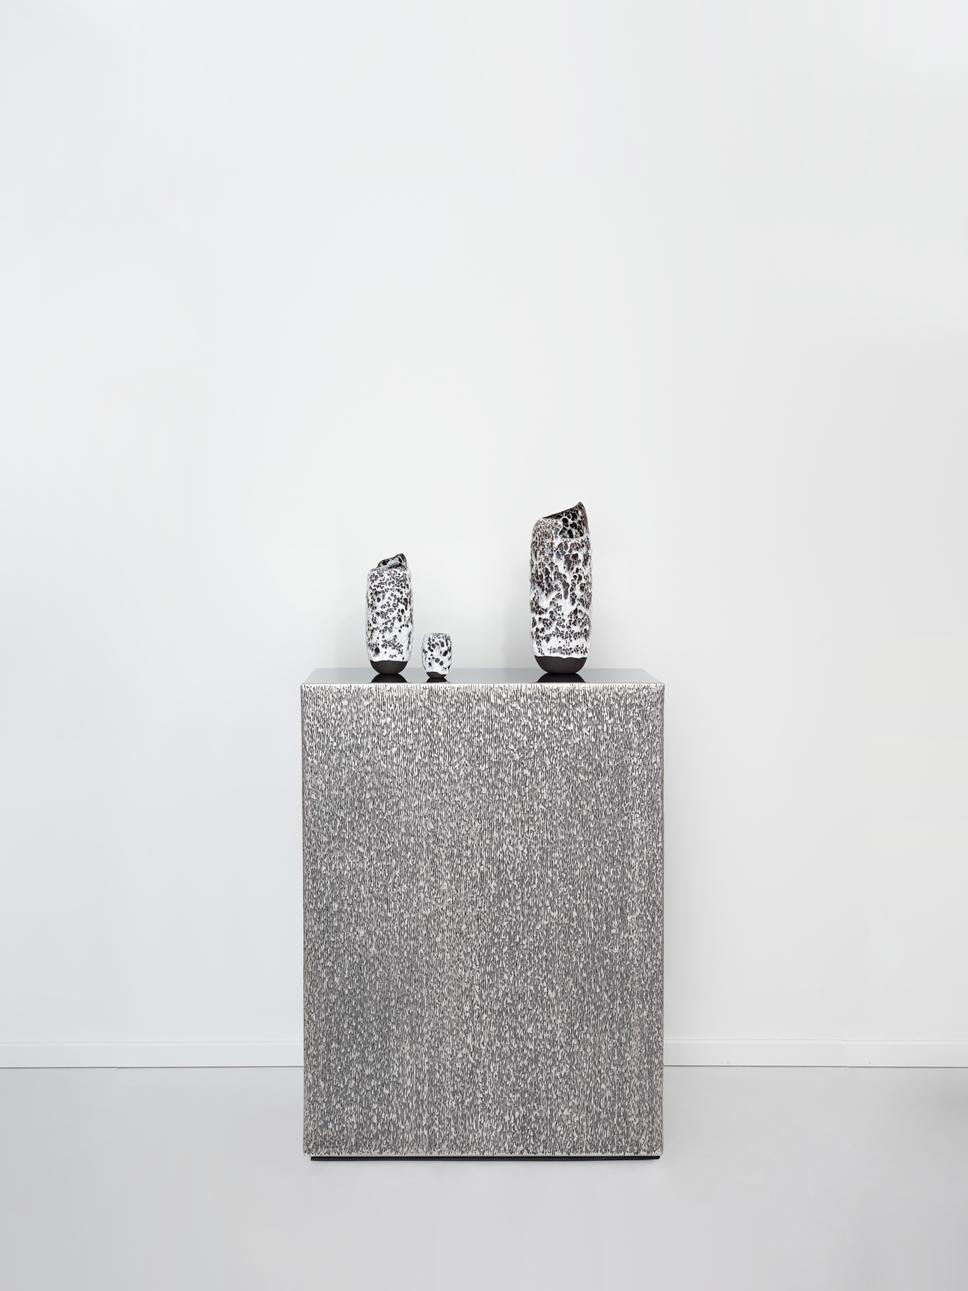 Лена Соловьева для&nbsp;галереи Booroom, консоль из серии&nbsp;&laquo;Предмет 1/1&raquo; (в единственном экземпляре), нержавеющая сталь, 2022